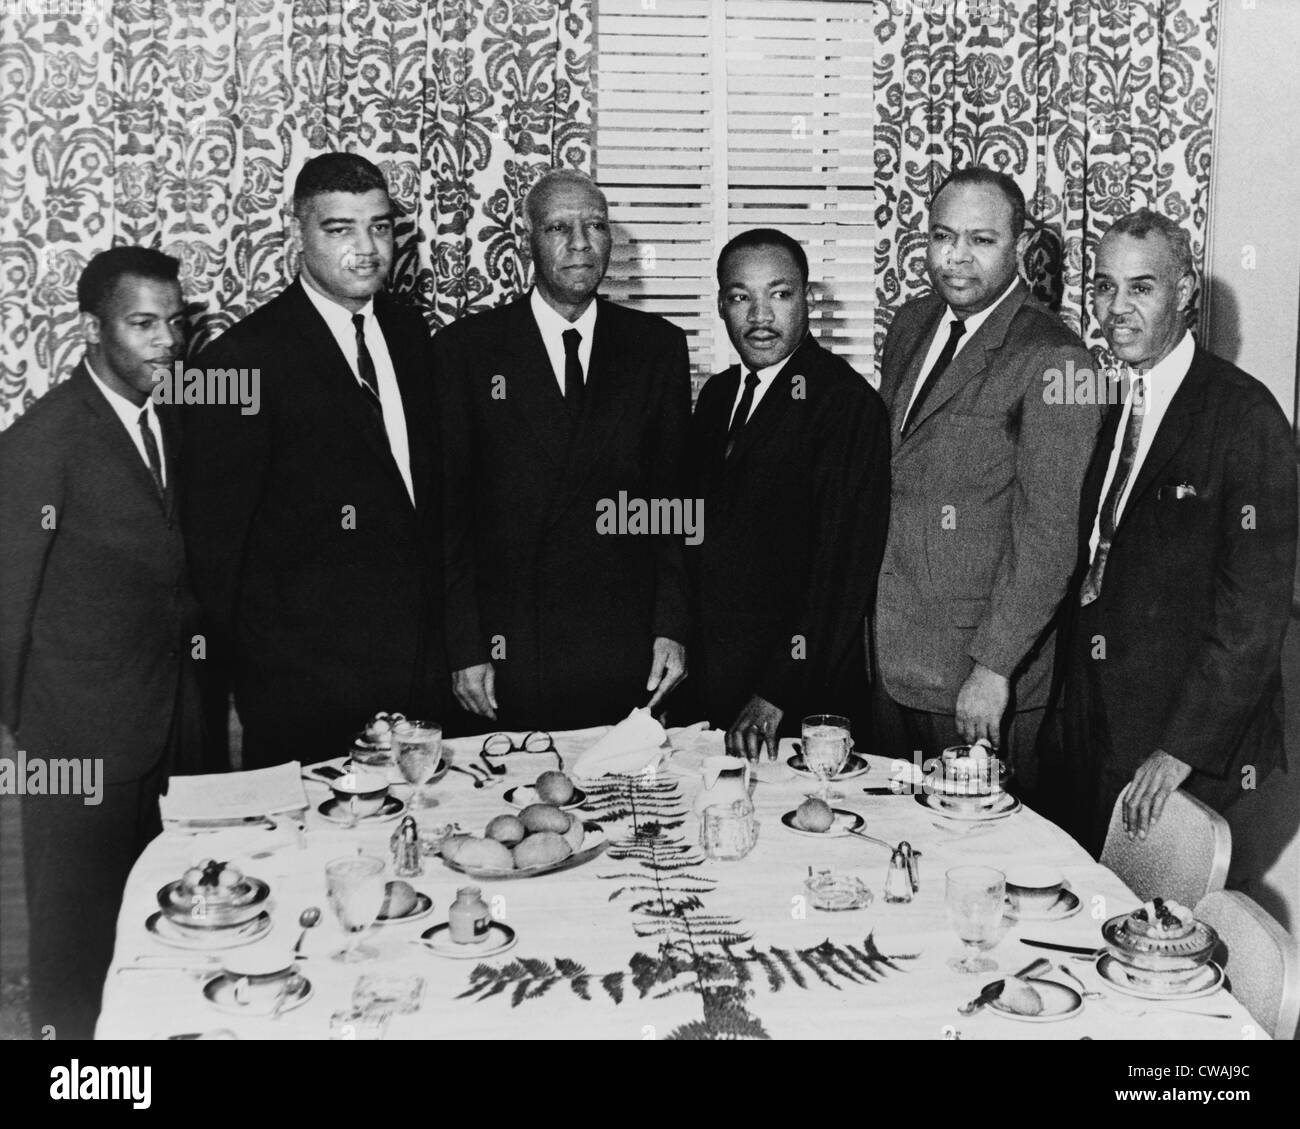 Les organisateurs de la Marche de 1963 sur la réunion de Washington à New York, 1963 : (de gauche à droite), John Lewis, Whitney Young, Jr., Martin Banque D'Images